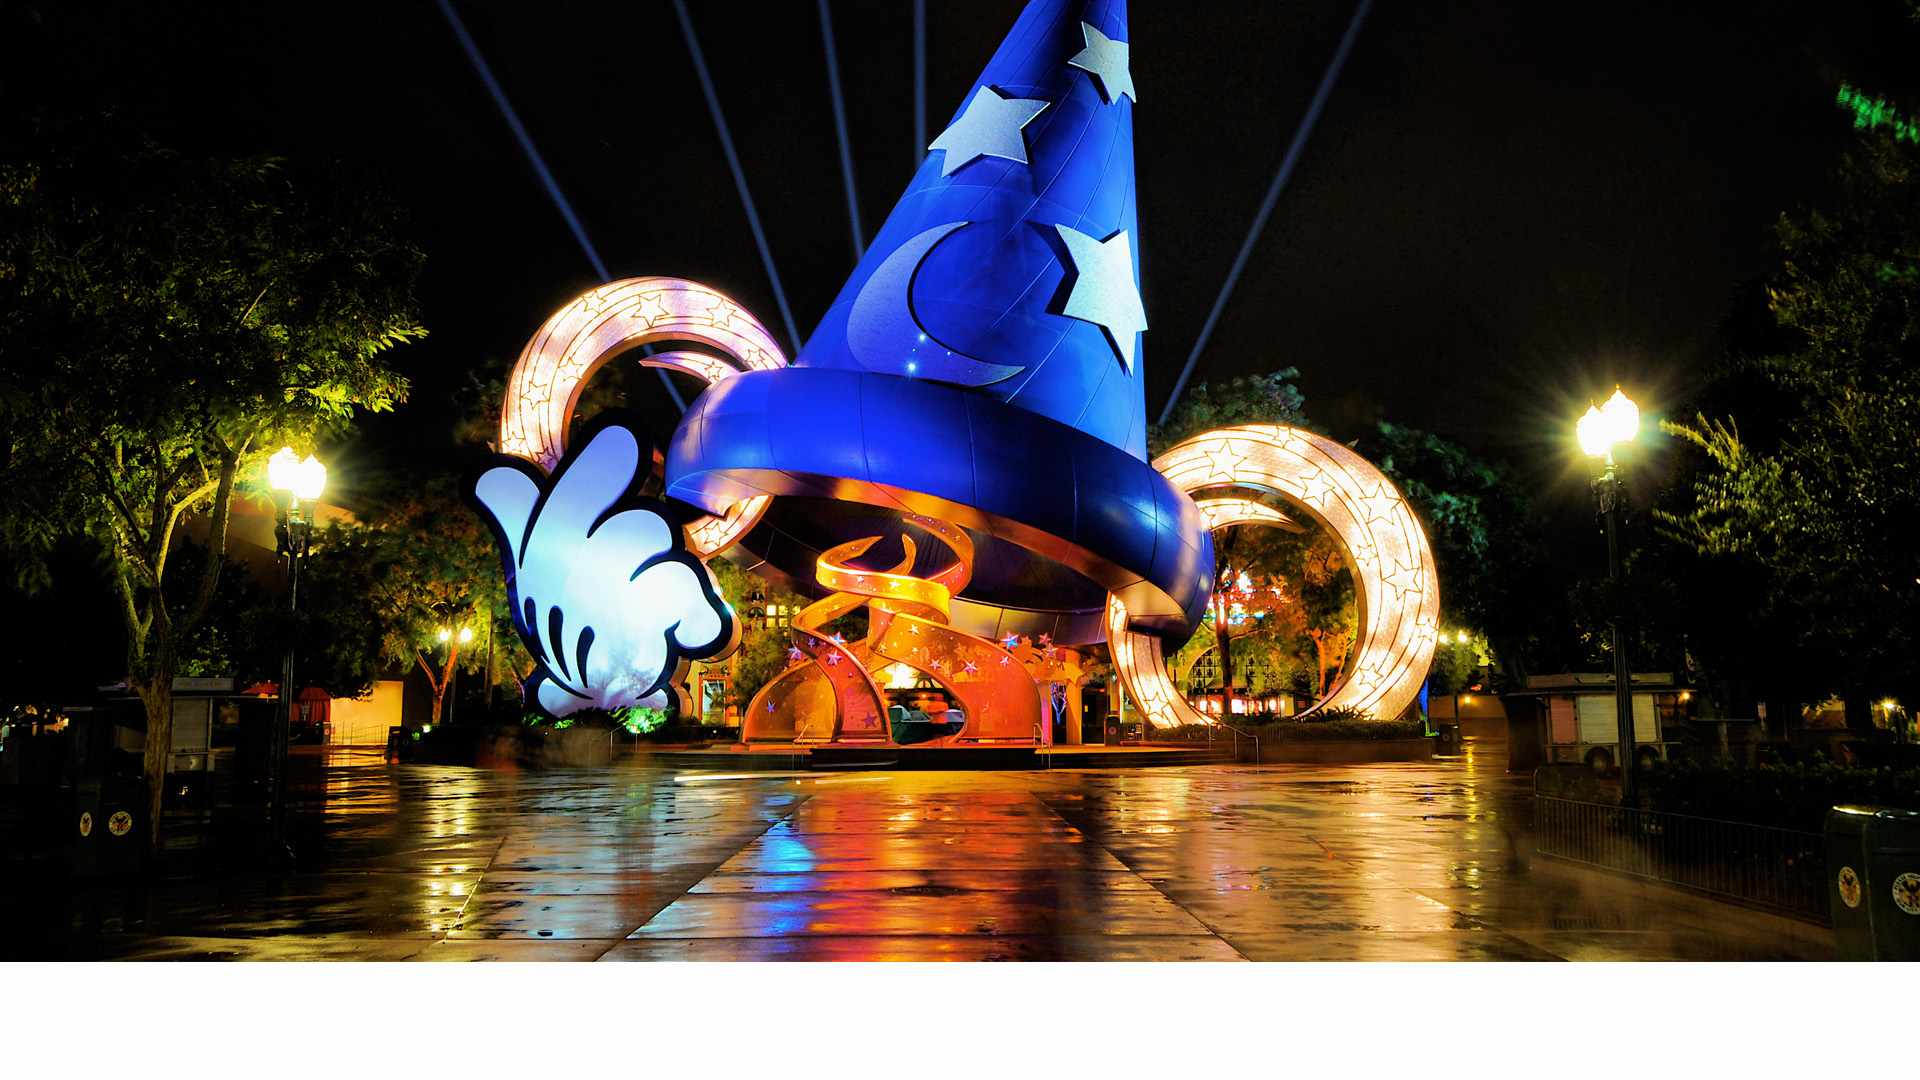 El parque Disney’s Hollywood Studios estrenará una nueva e innovadora atracción navideña